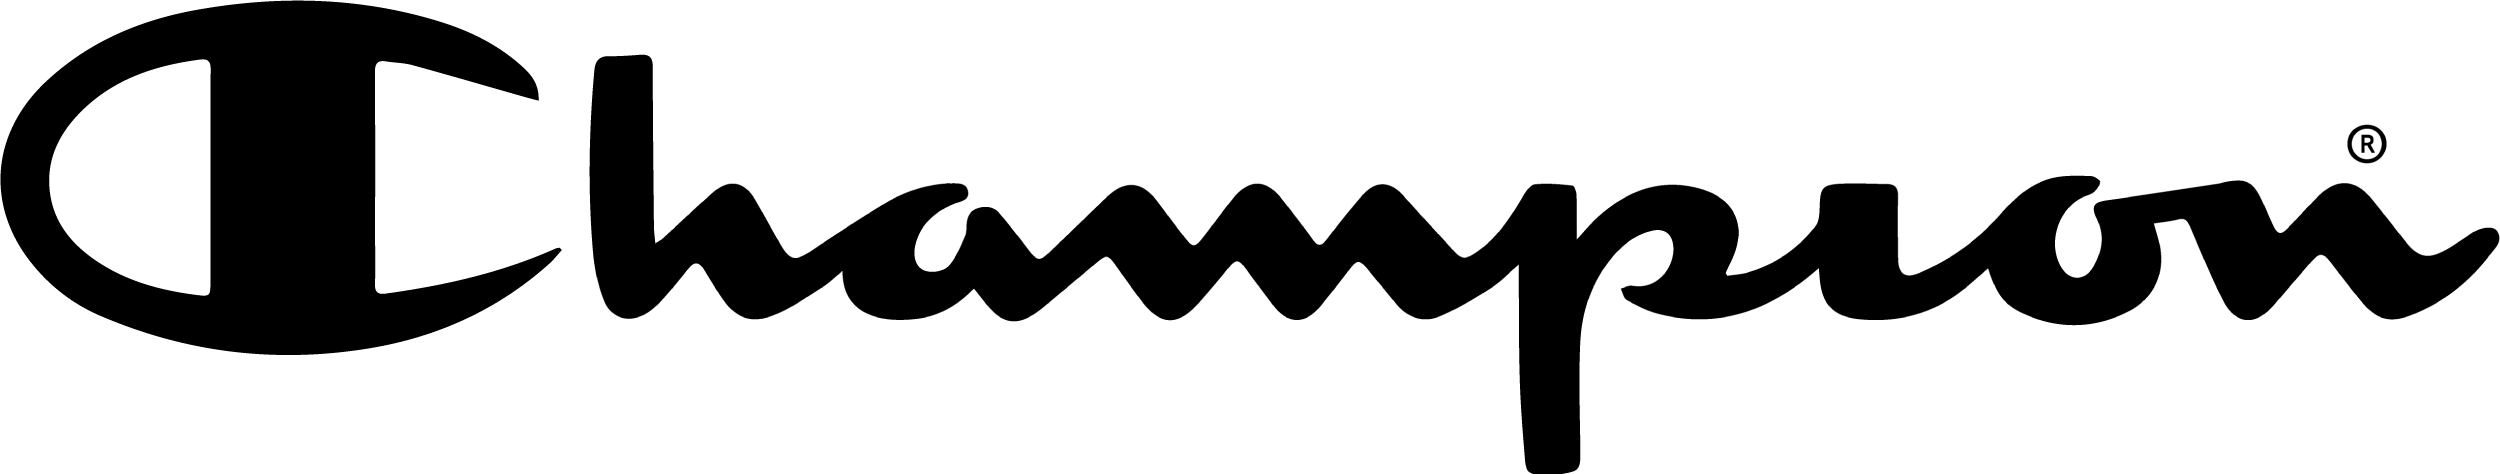 Logo of Champion